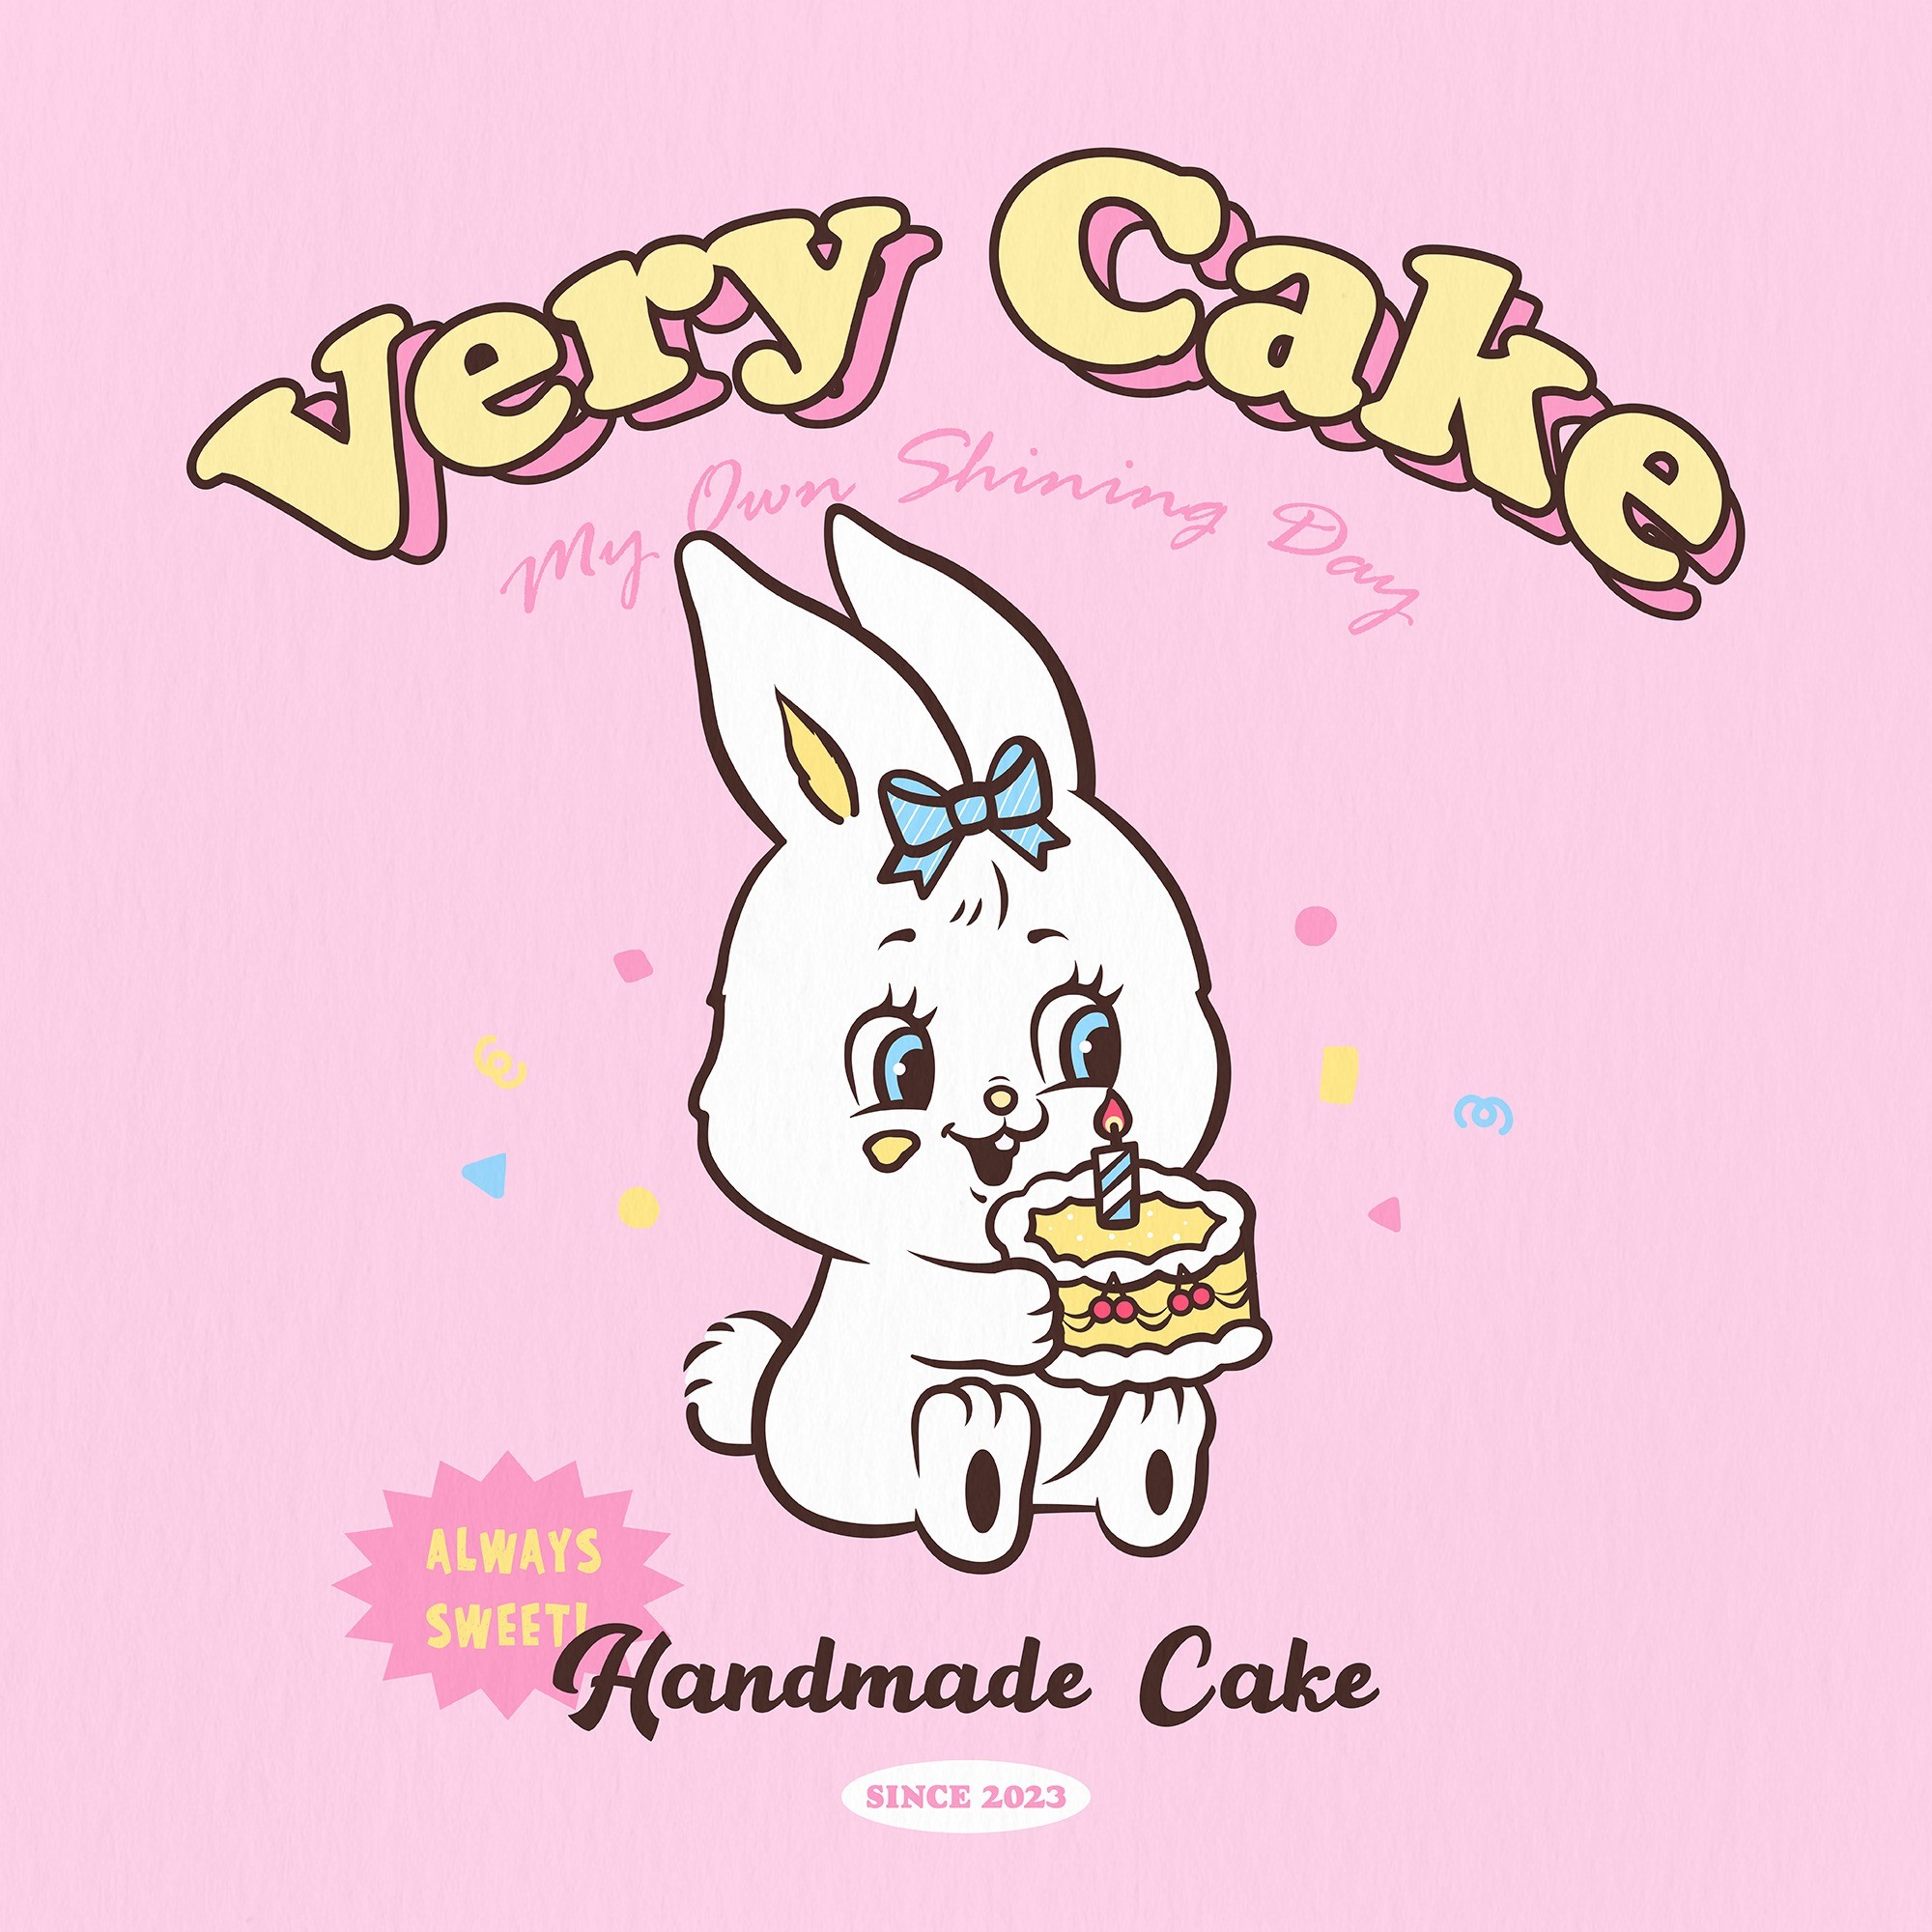 포트폴리오-핸드메이드 케이크 전문점 "VERY CAKE" 로고디자인